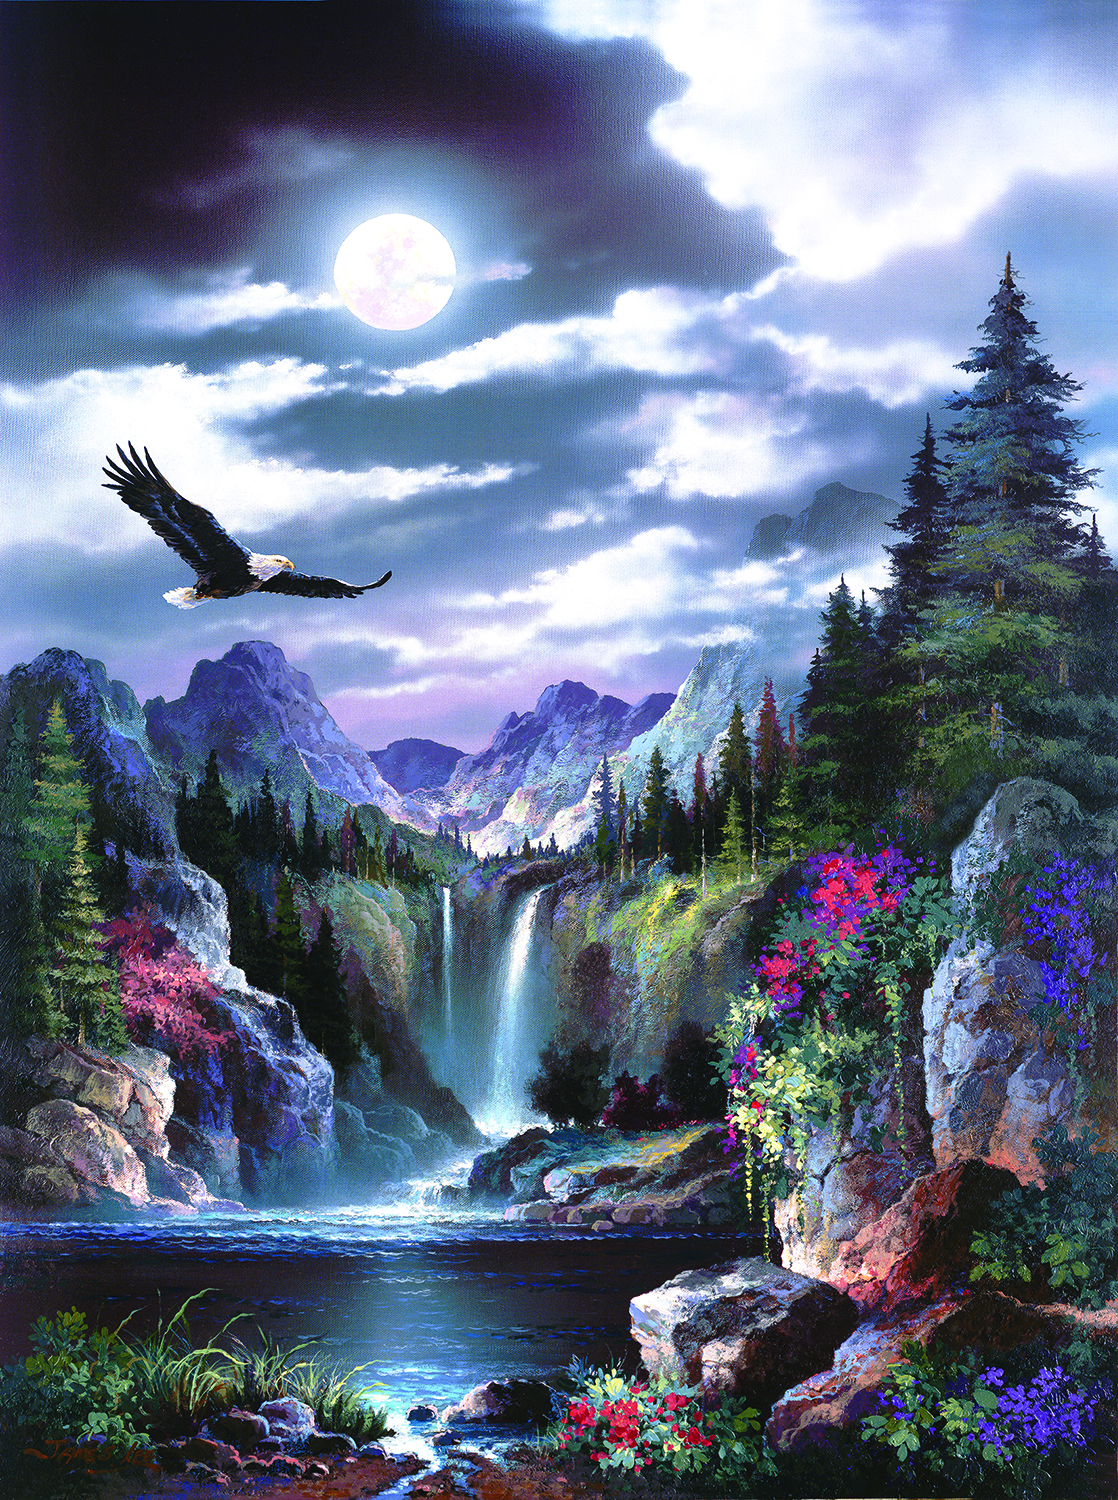 Moonlit Eagle